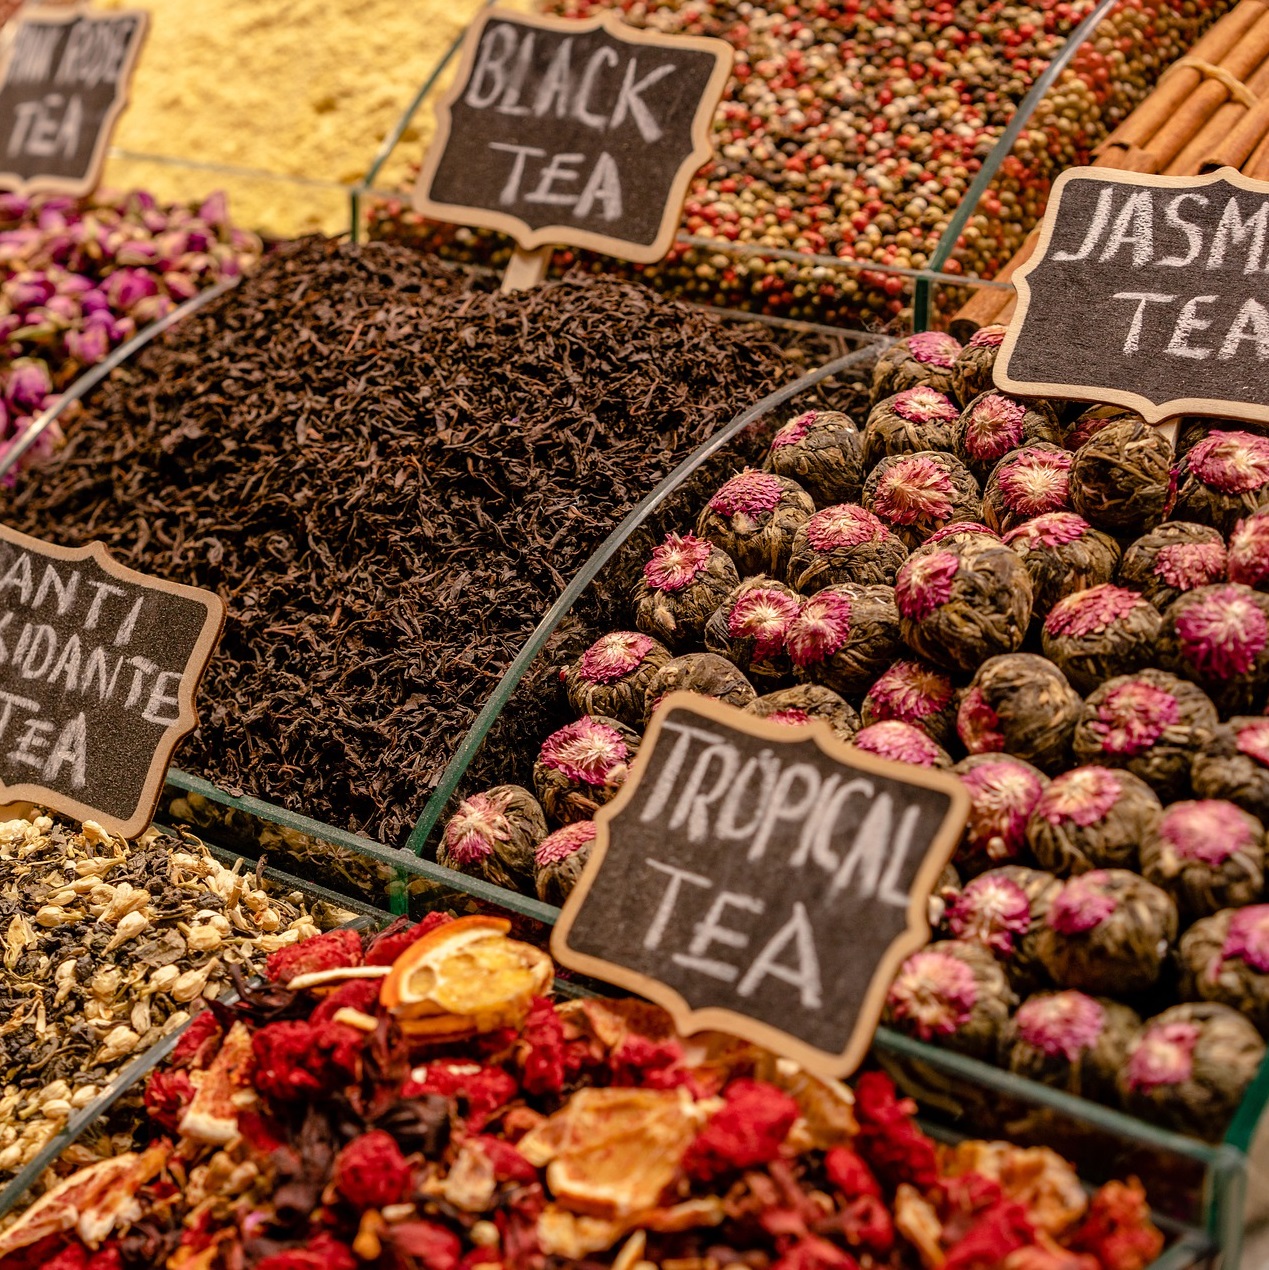 Thé et tisane sur les marchés lyonnais